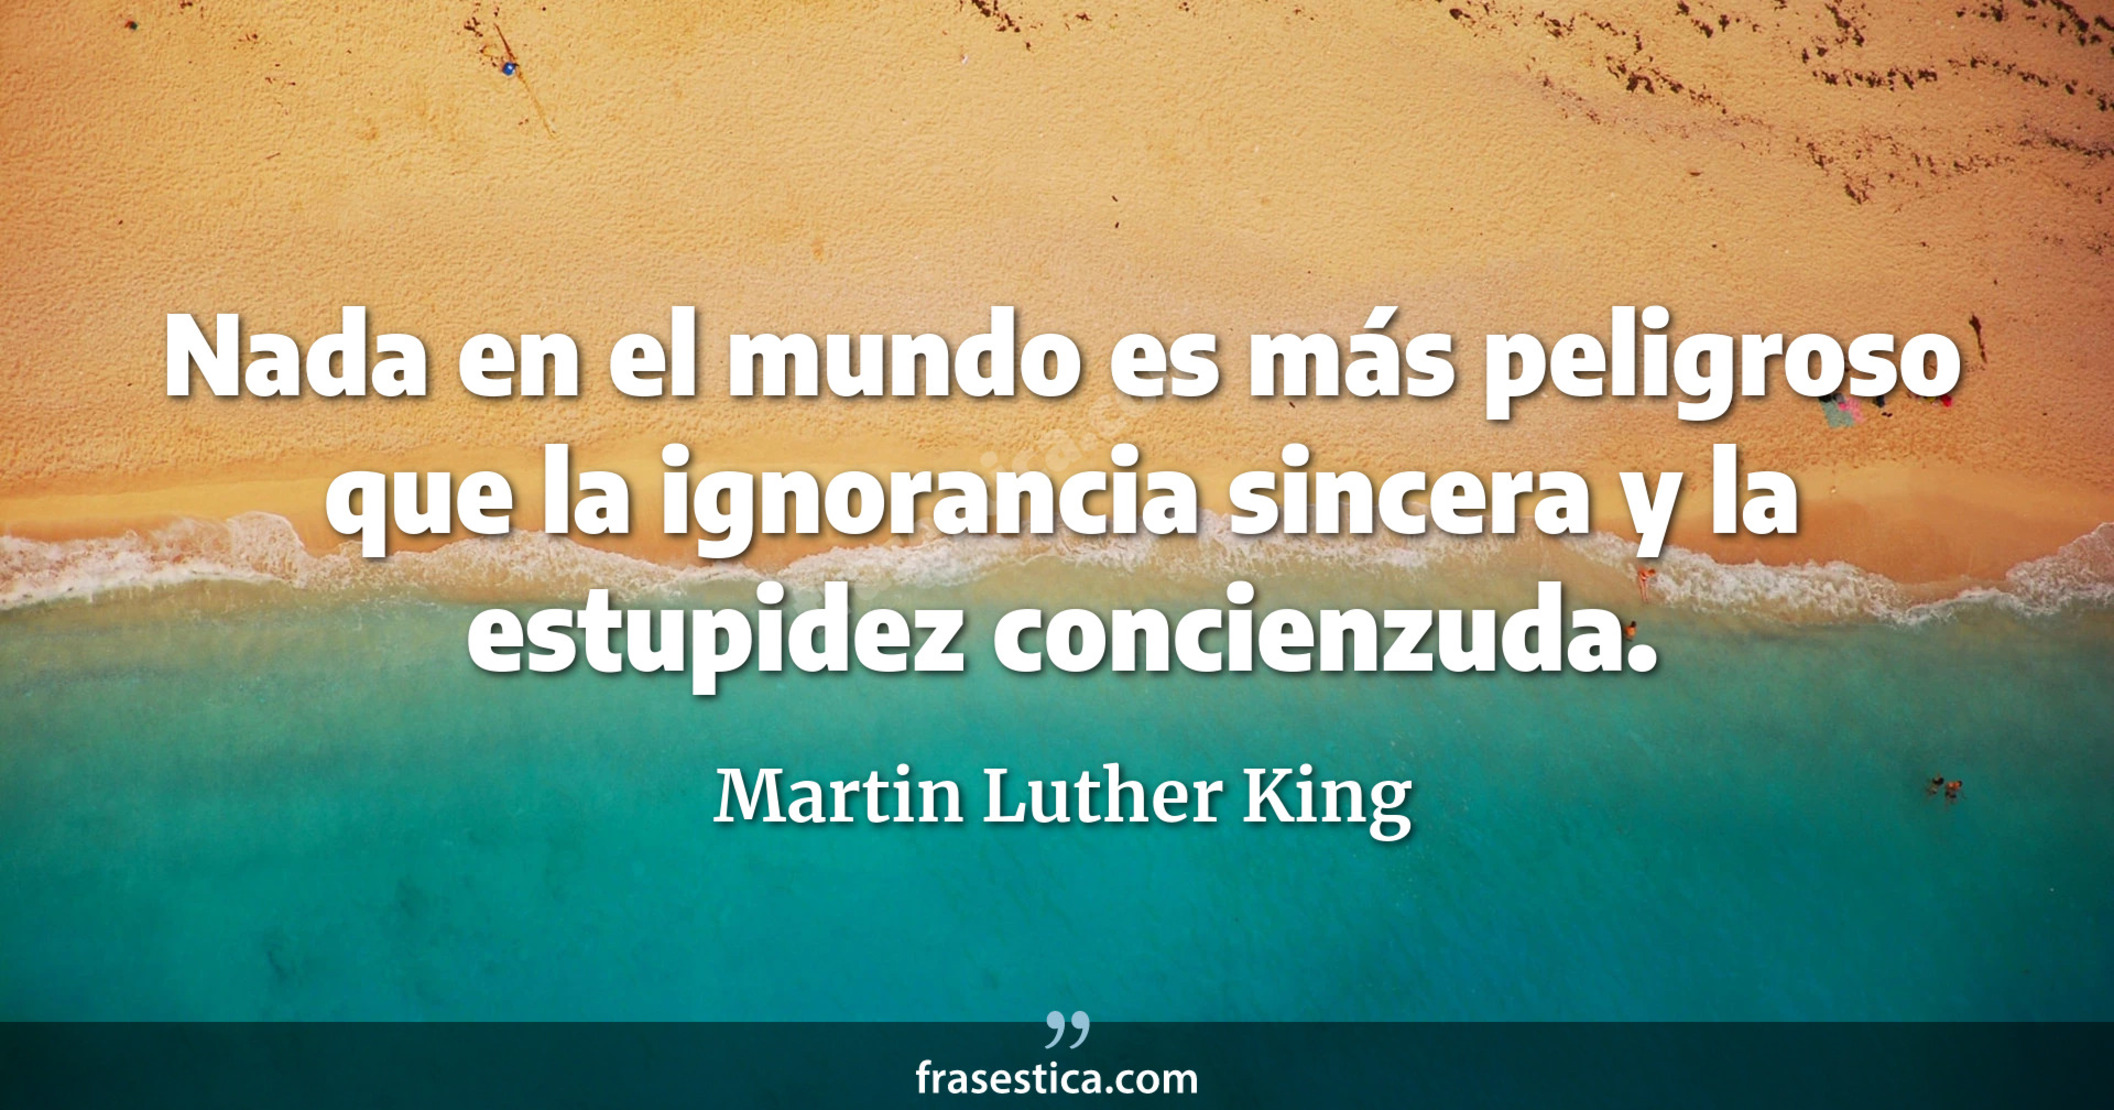 Nada en el mundo es más peligroso que la ignorancia sincera y la estupidez concienzuda. - Martin Luther King